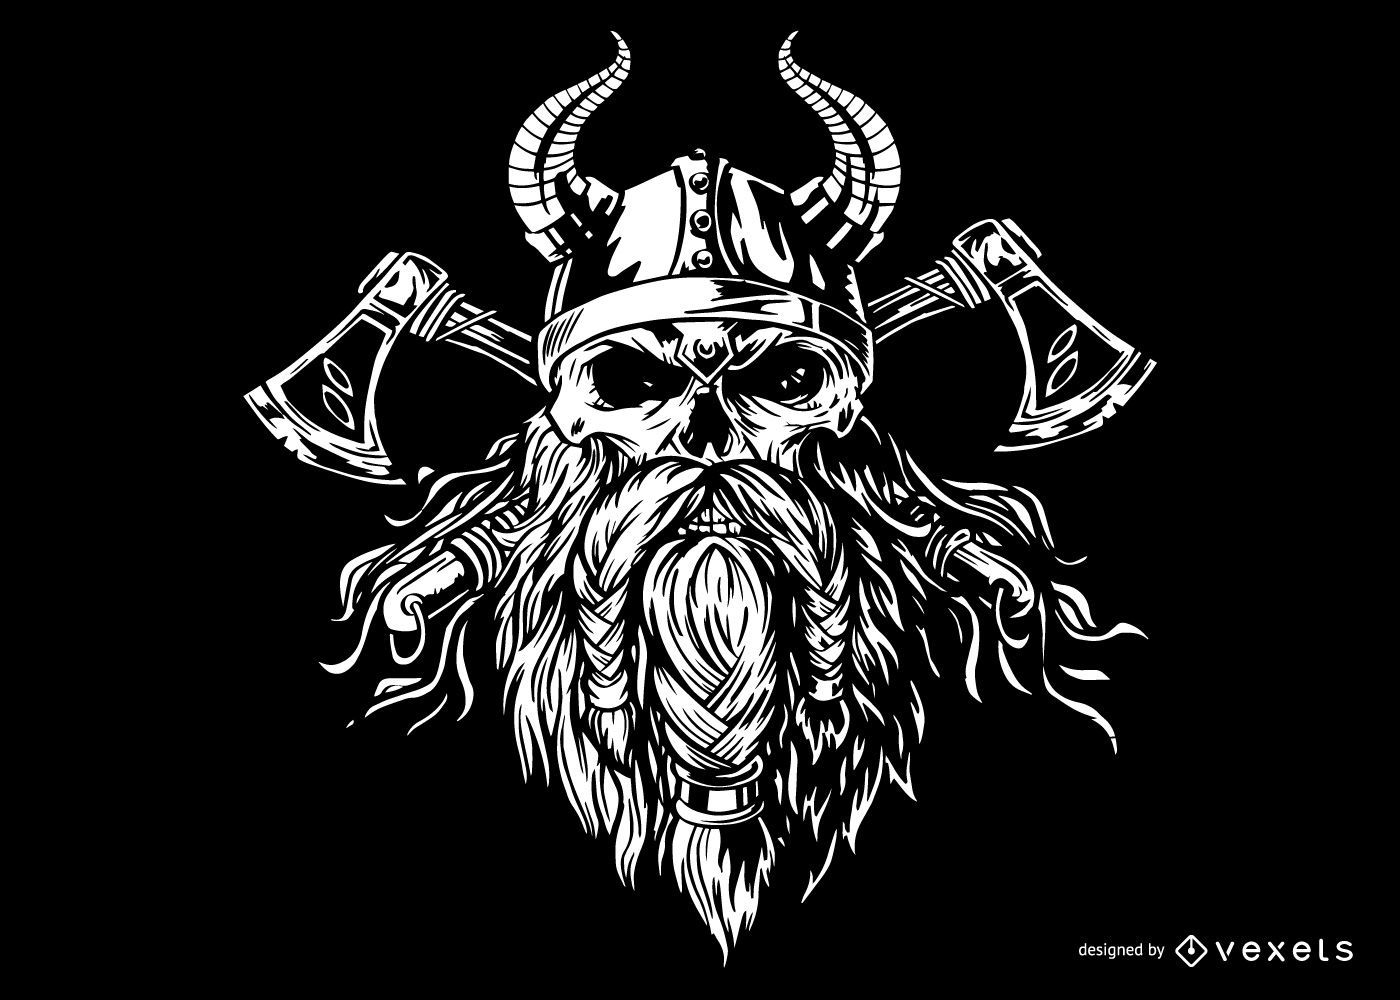 Thor Sohn von Odin durch Chadlonius